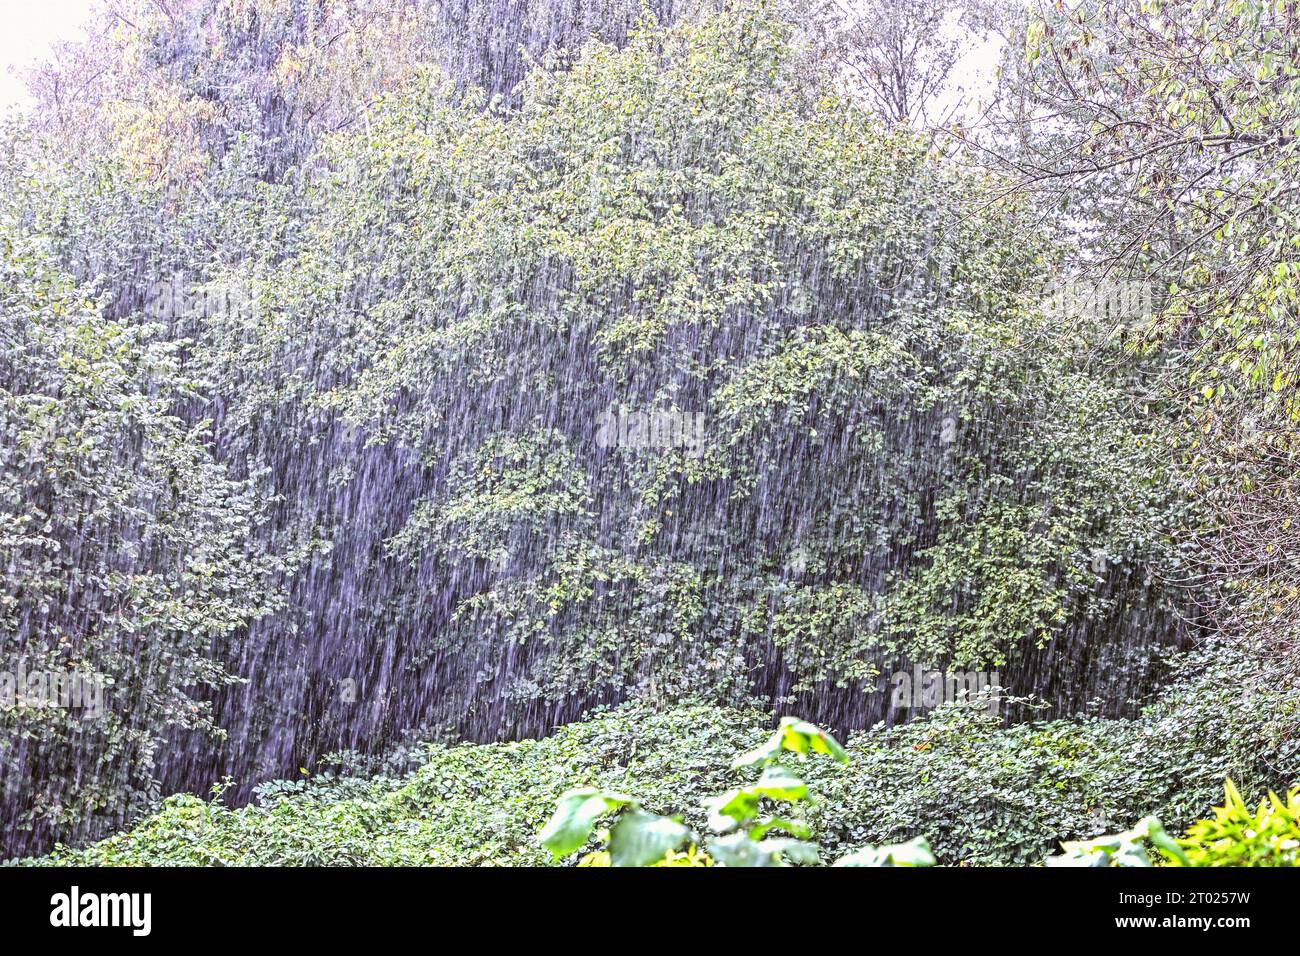 Ugger Regen für die Natur Regenfälle prasseln auf den dürren Boden in der Landschaft und versorgt die Natur mit dringend notwendigem Wasser *** notwendiger Regen für die Natur Regenfälle pelzen den trockenen Boden in der Landschaft und versorgen die Natur mit dringend benötigtem Wasser Credit: Imago/Alamy Live News Stockfoto